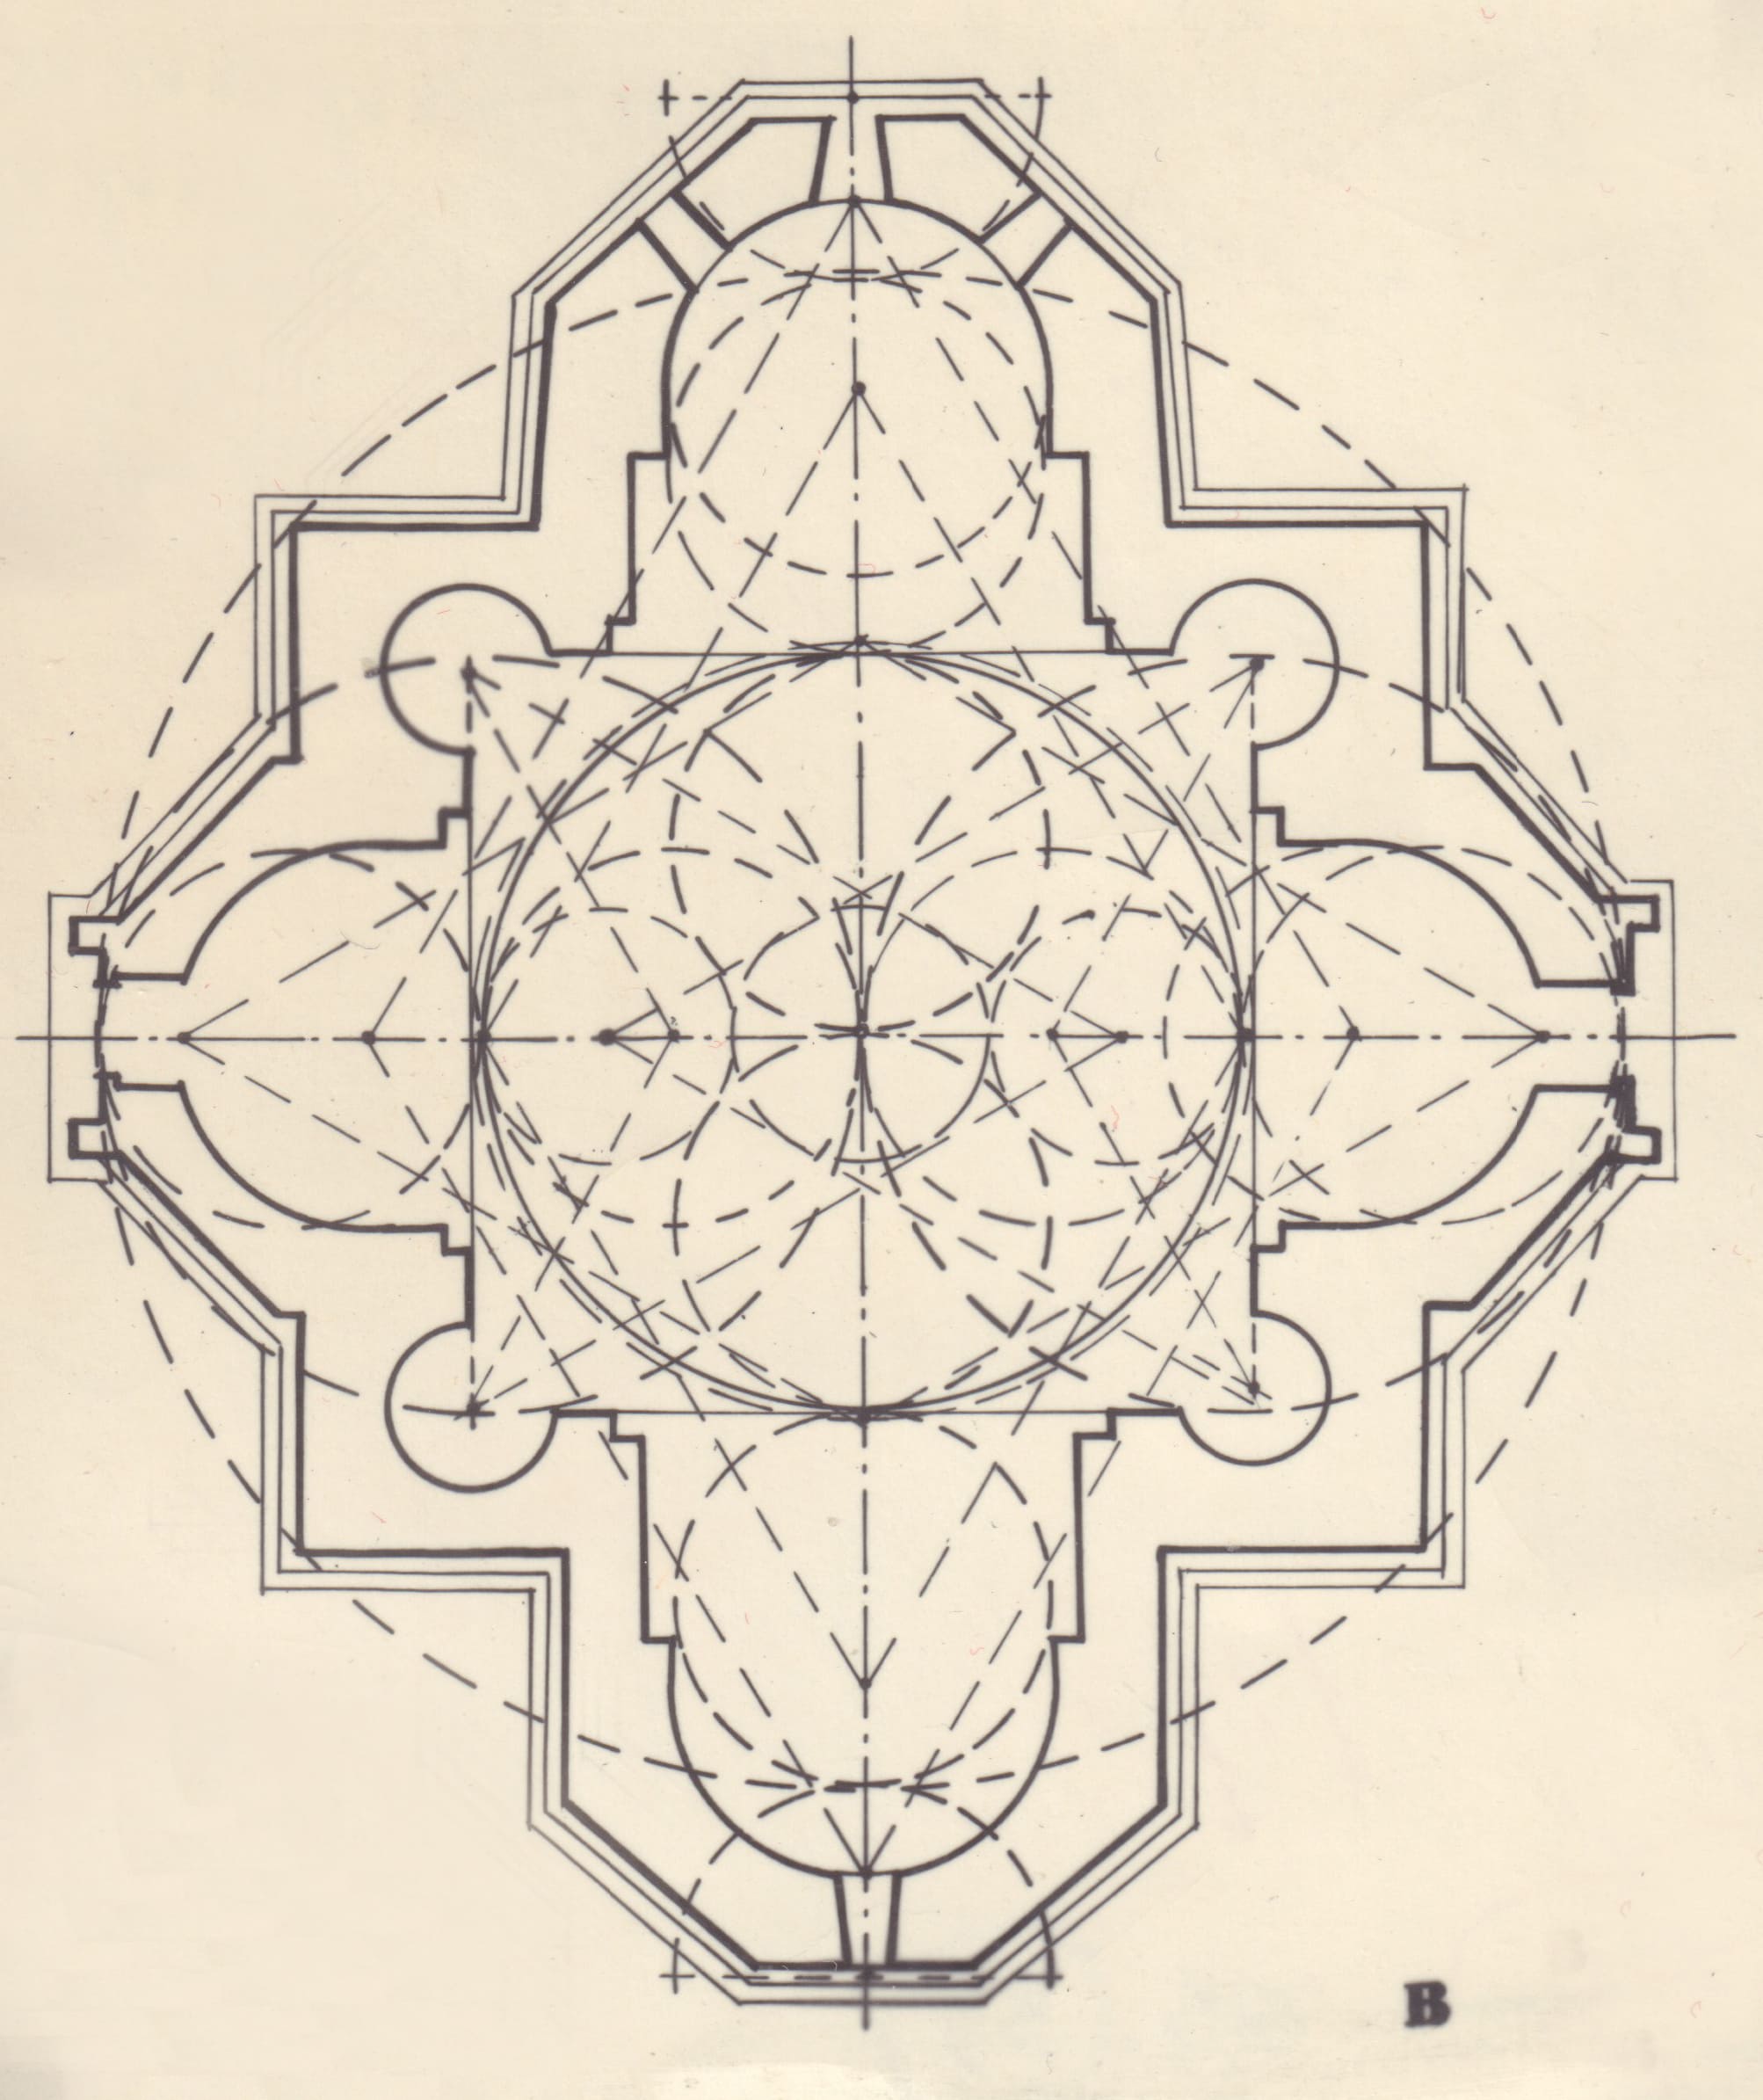 Տաճարի ներքին մասերի փոխադարձ հարաբերությունները պատկերող գծագիր